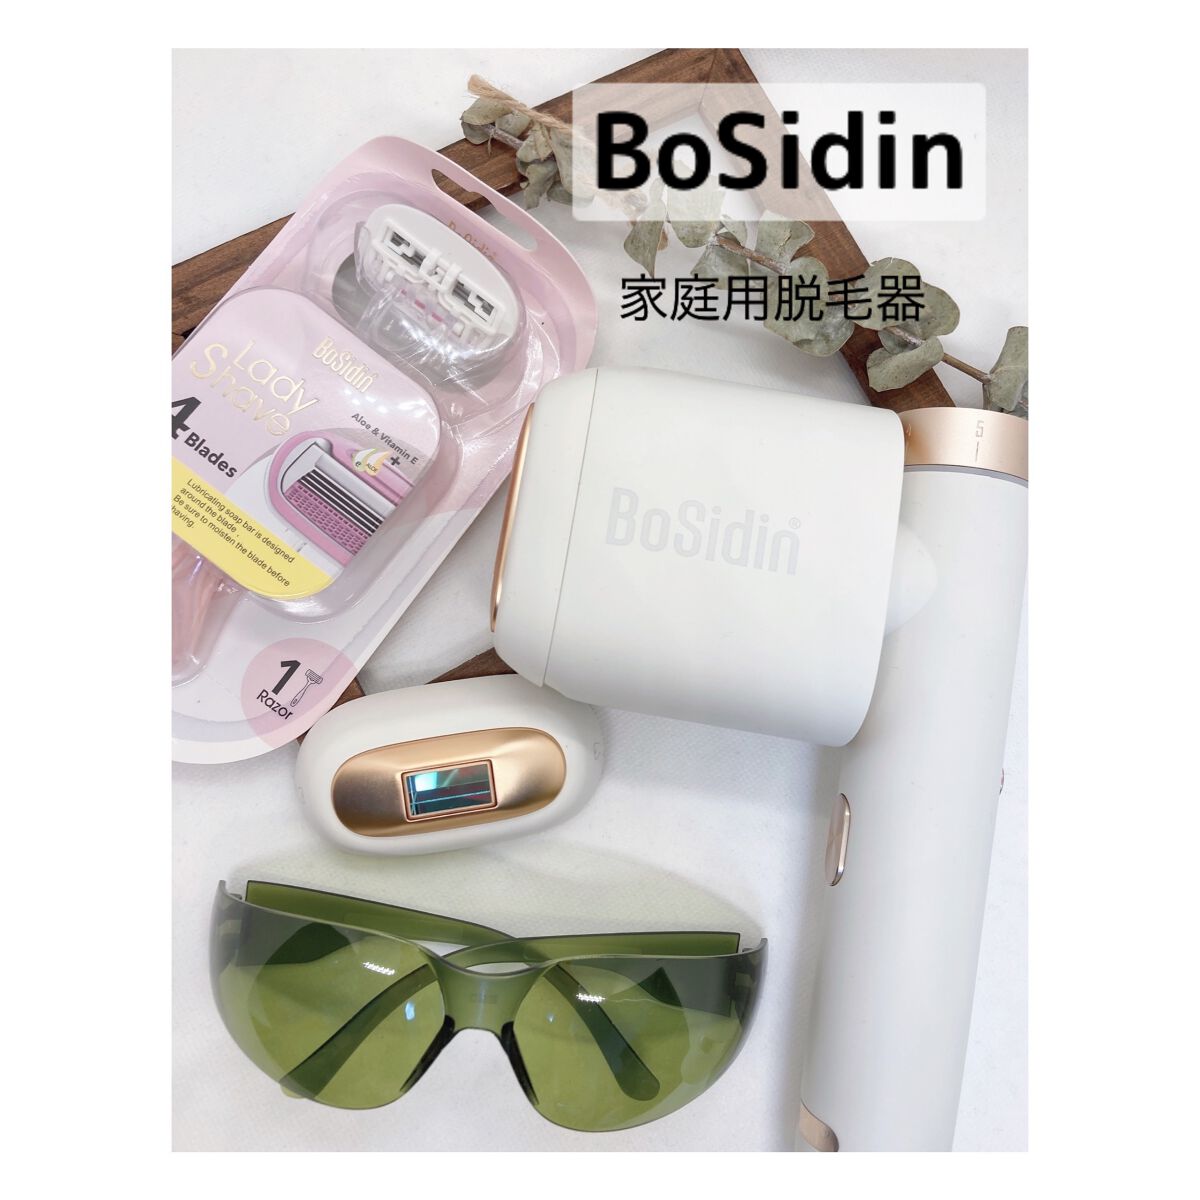 試してみた】BoSidin レーザー脱毛器 / BoSidinのリアルな口コミ